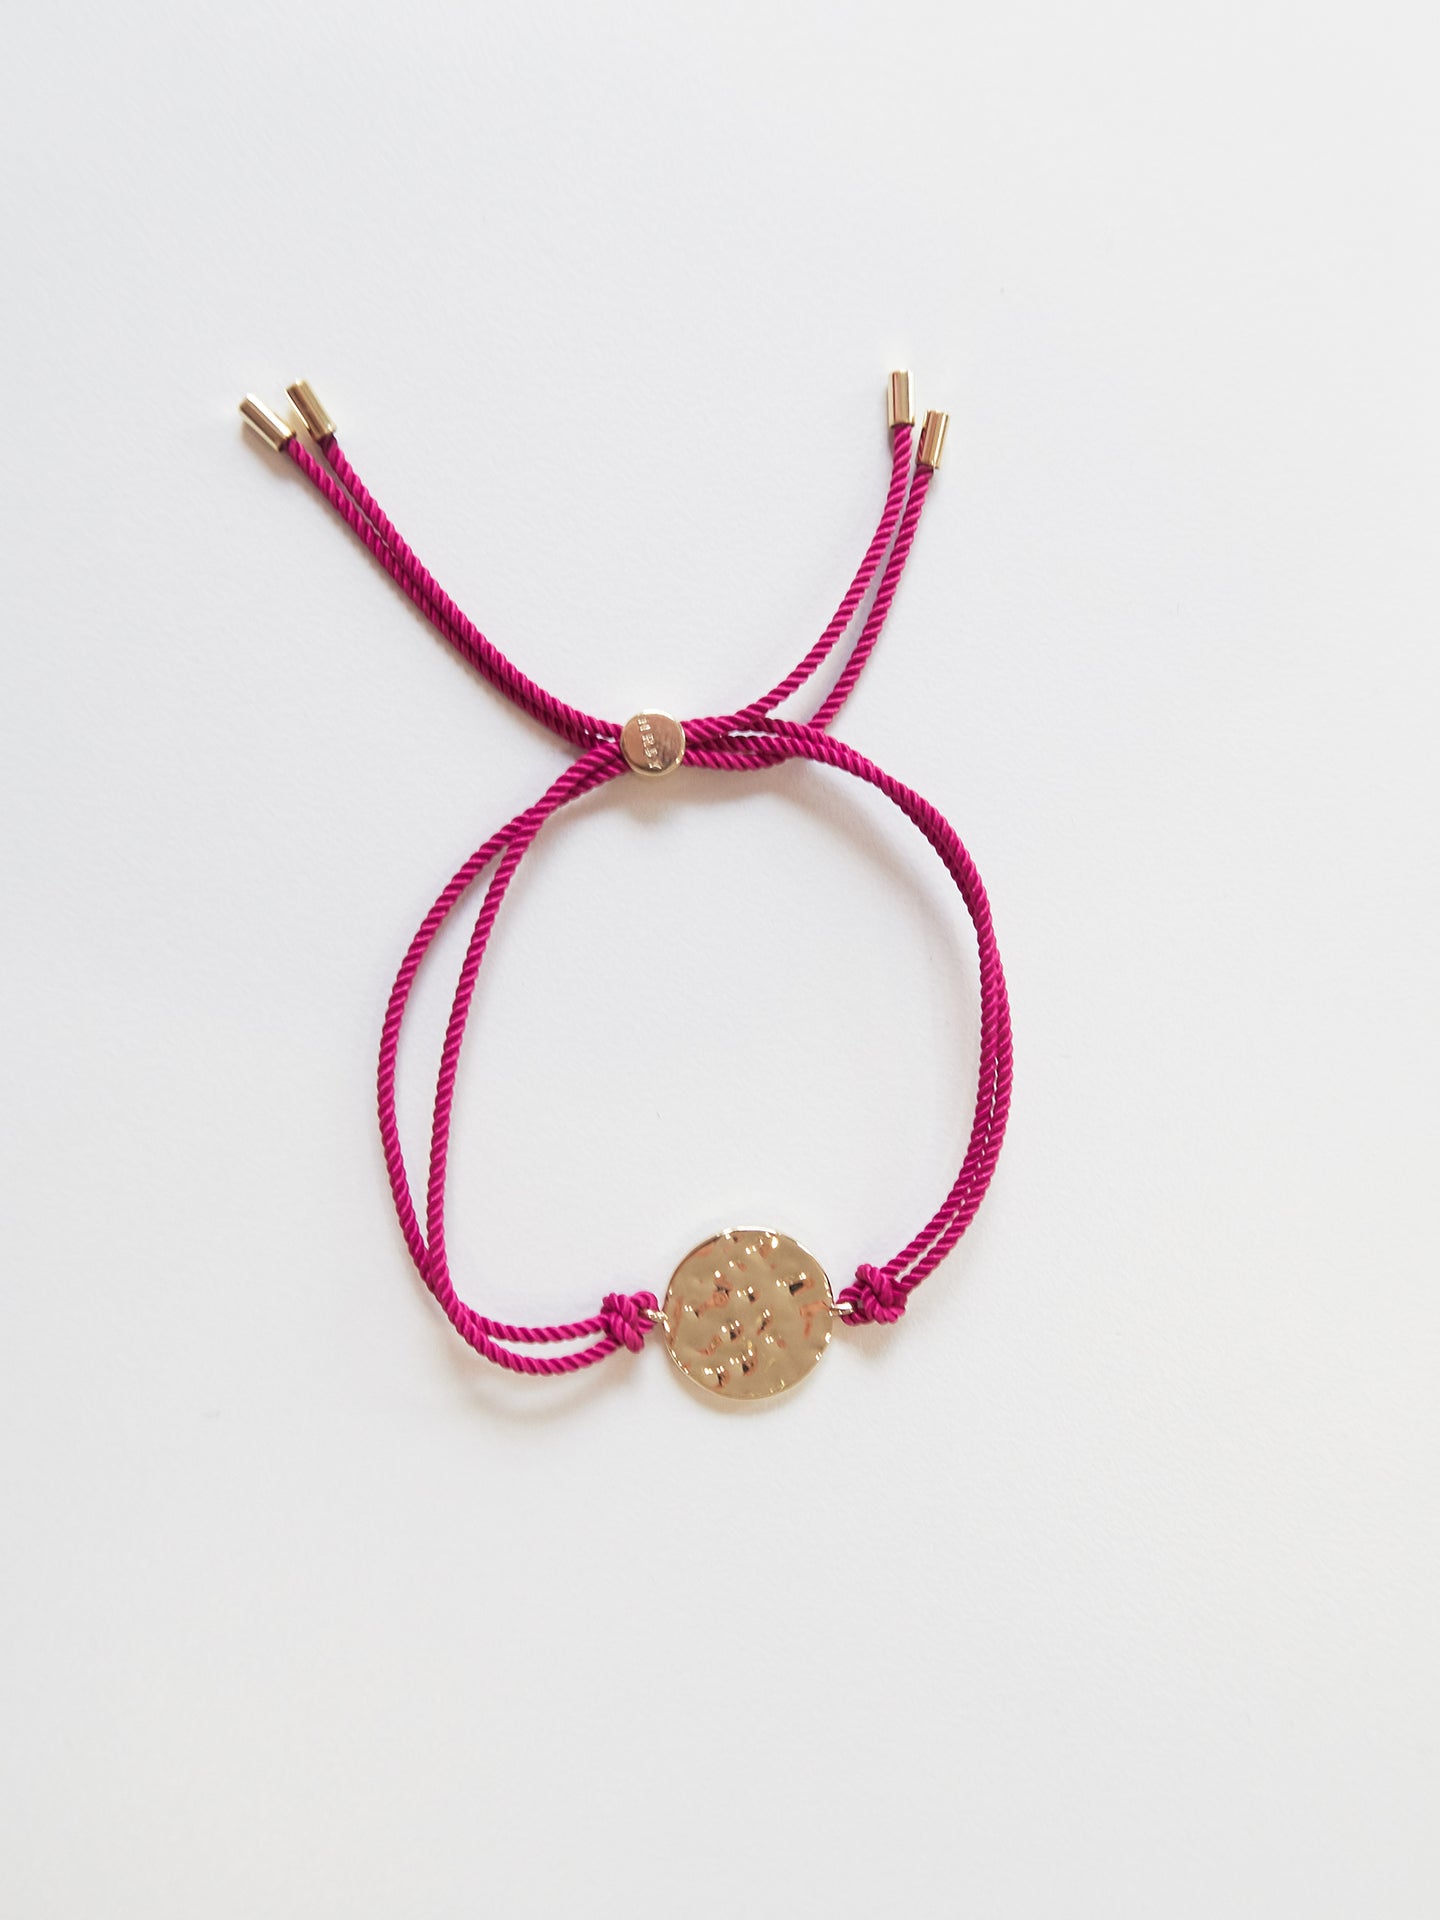 Gold bracelet with pink tassel